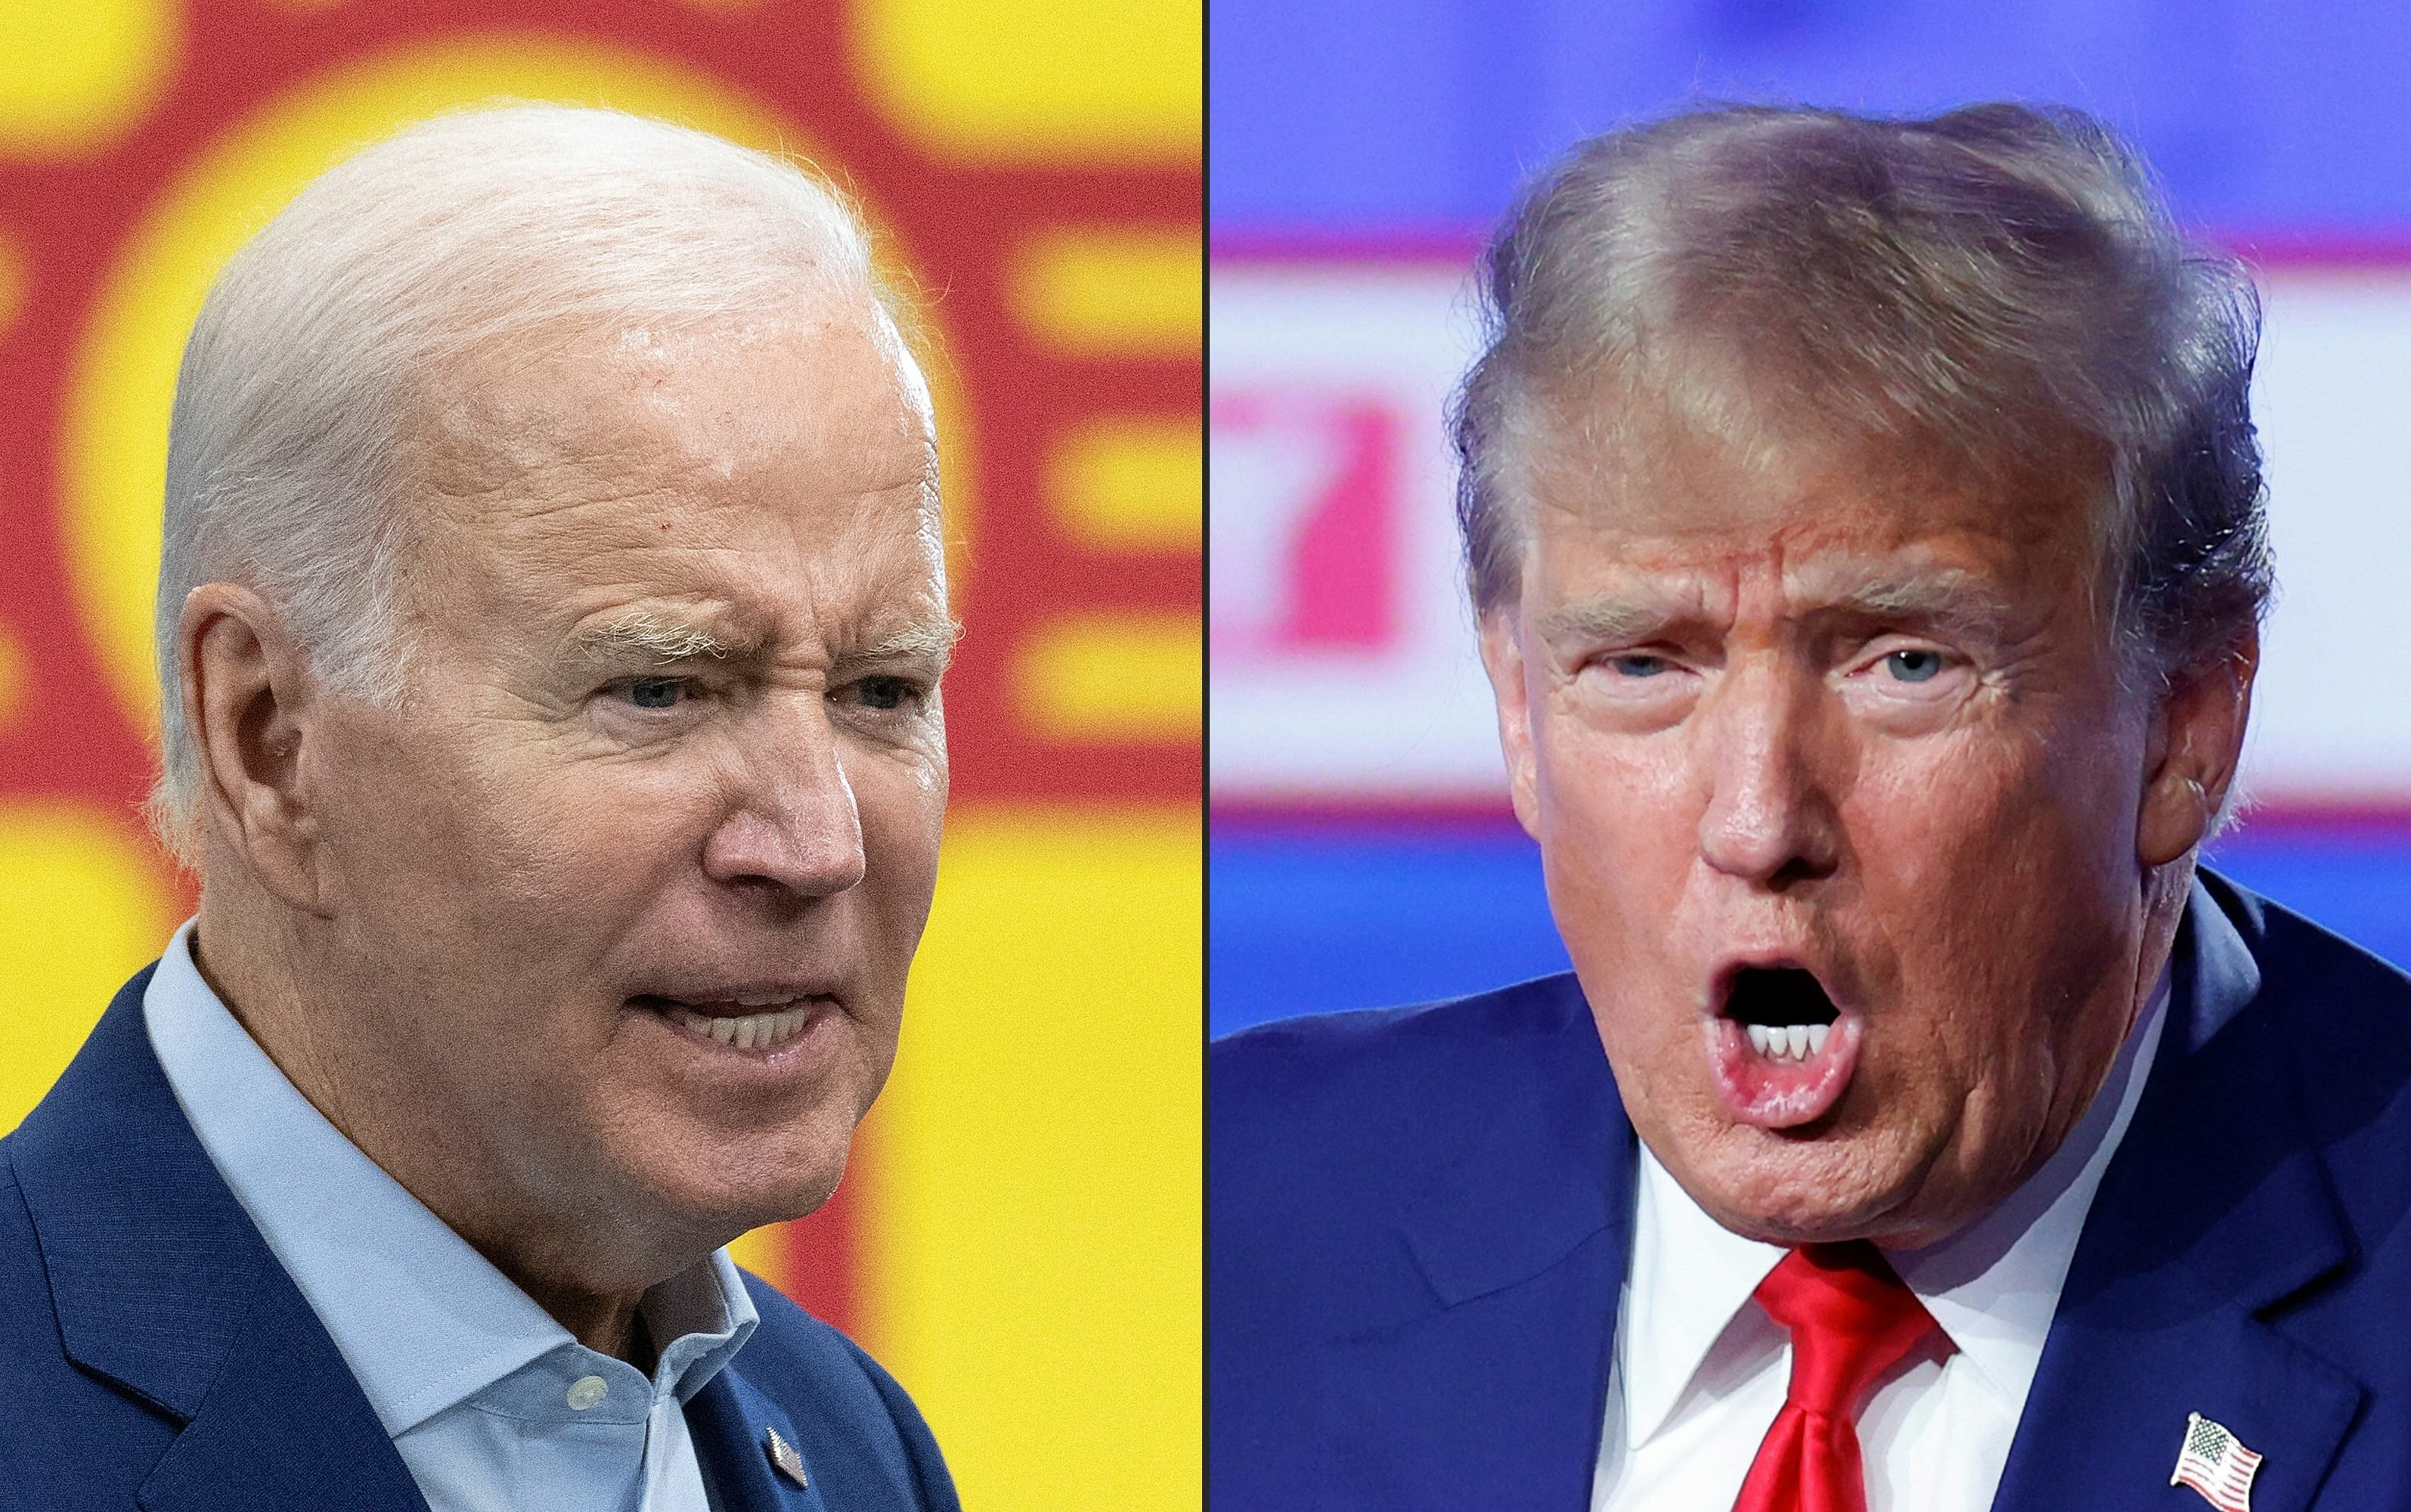 Estados Unidos, em 5 de novembro, terá disputa entre Donald Trump e Joe Biden